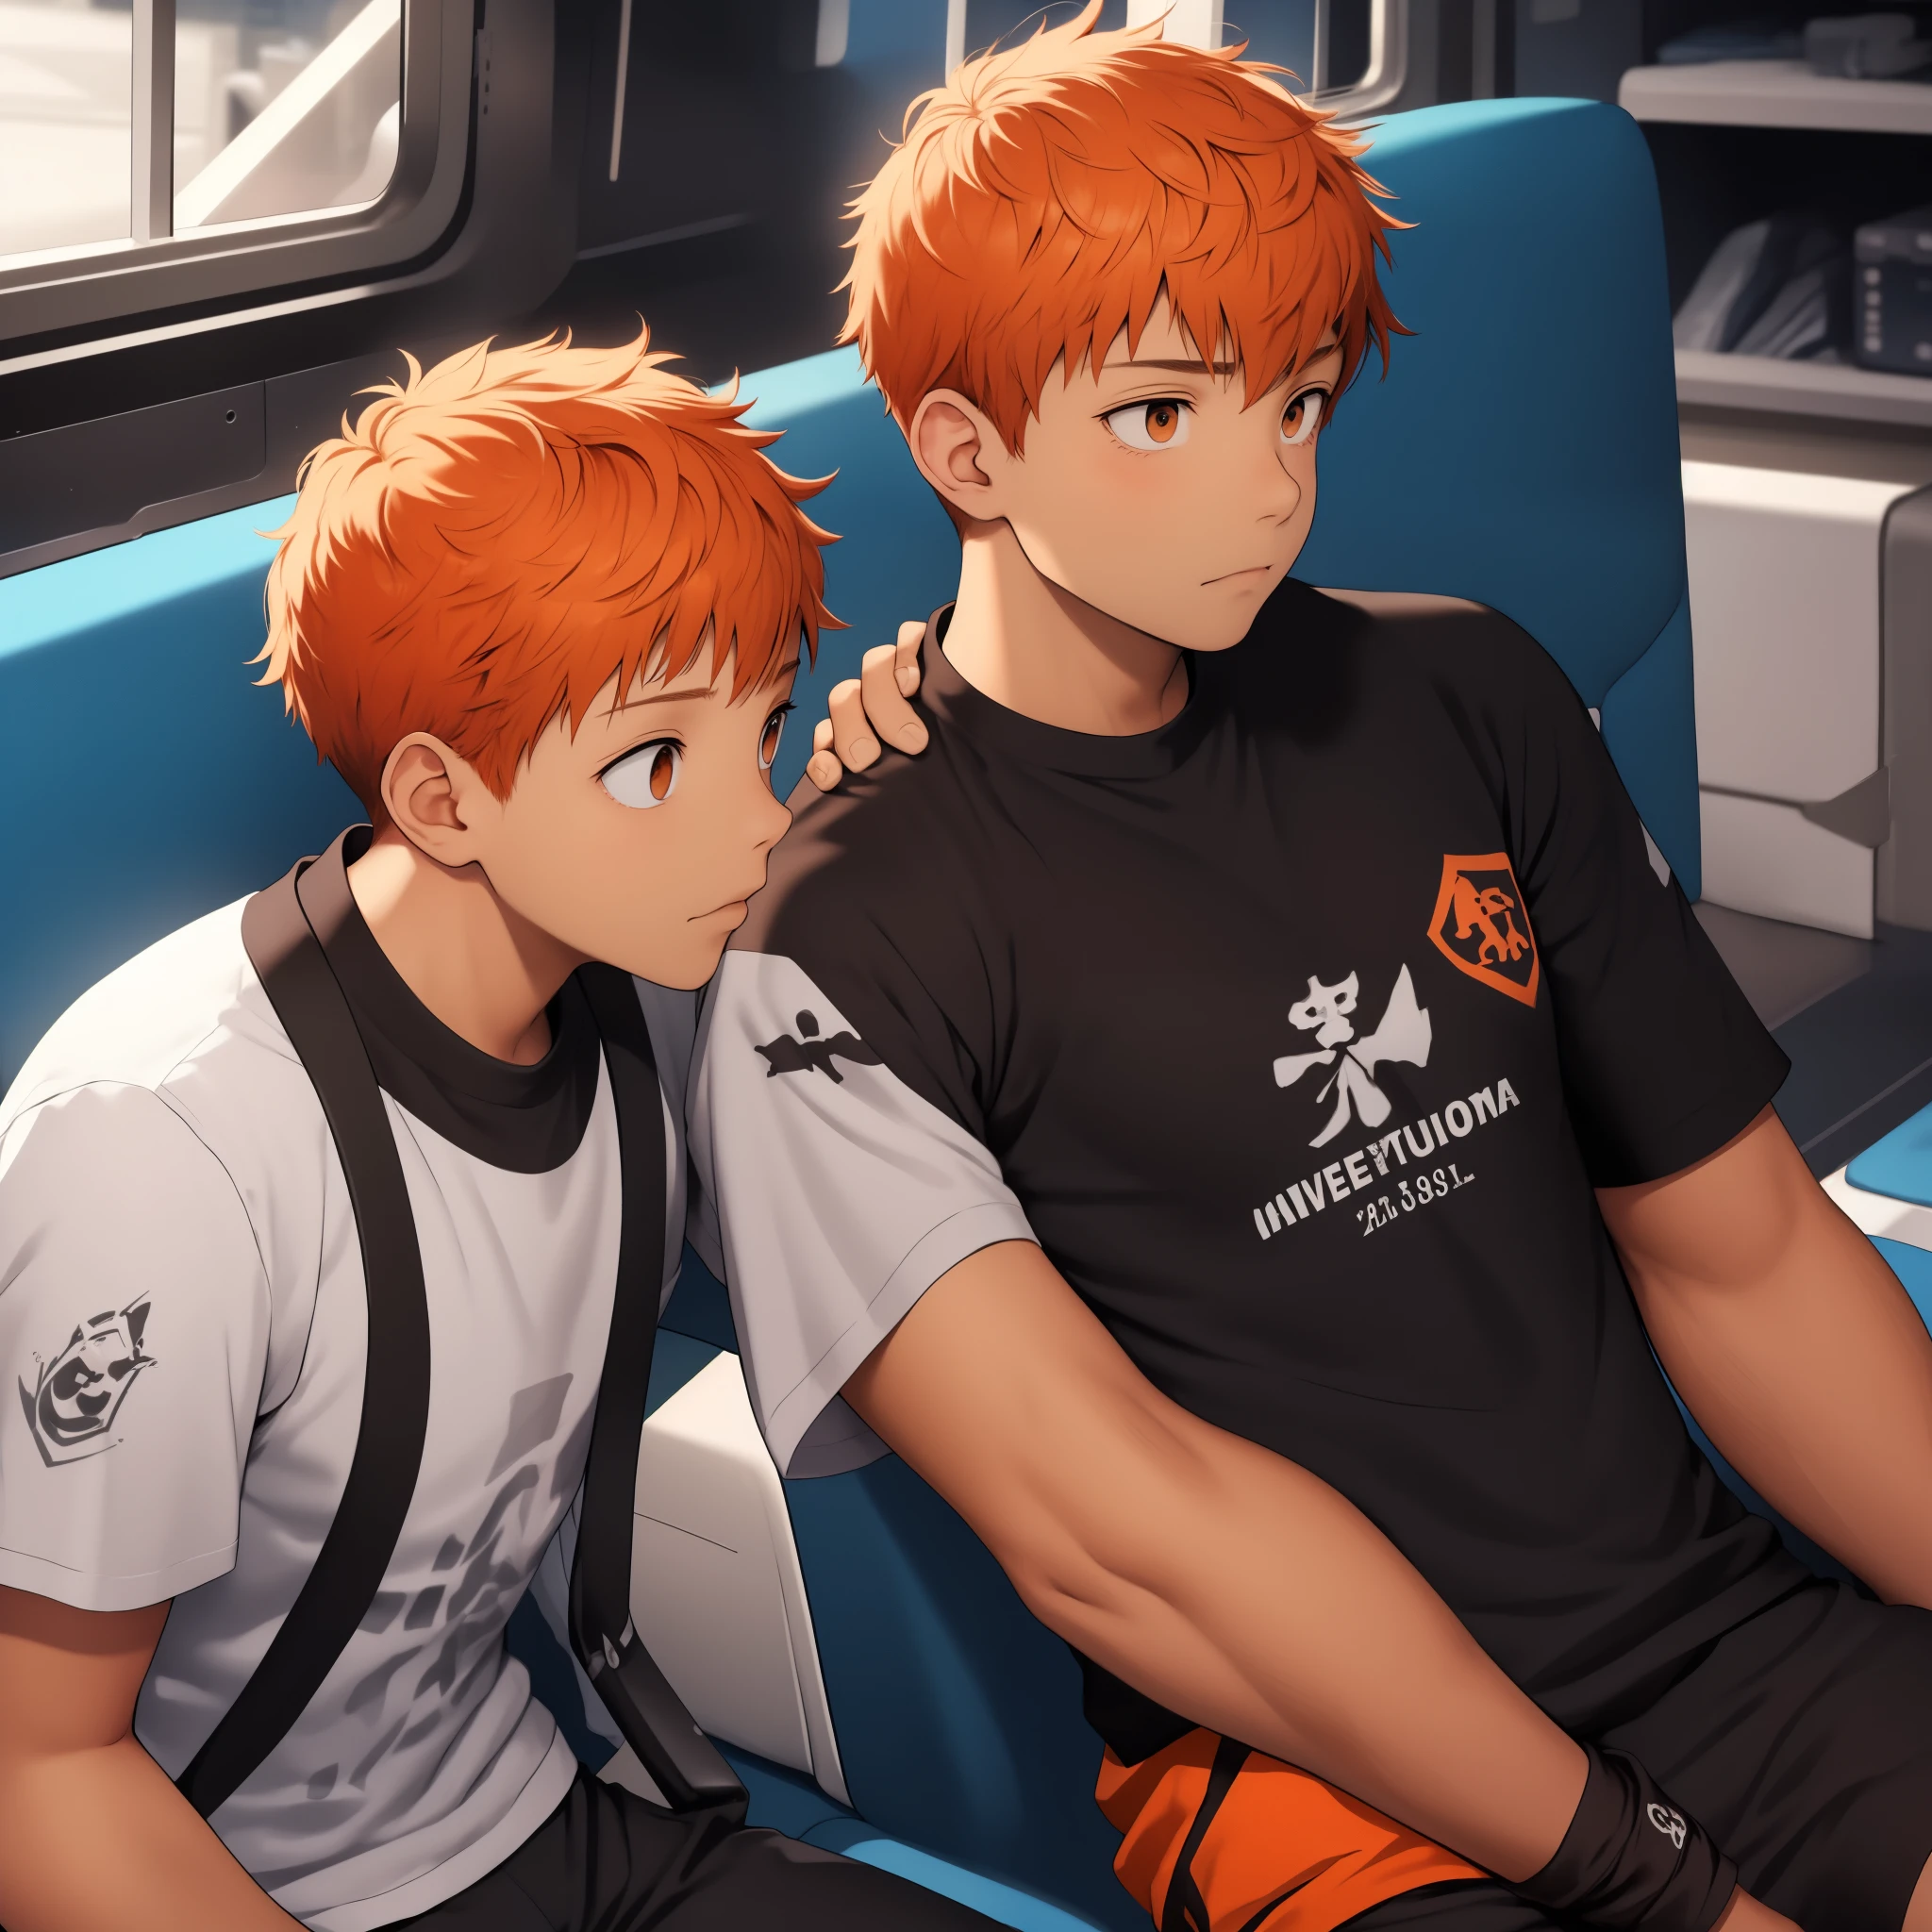 Existem dois irmãos, um com cabelo curto laranja, Eles têm 10 anos.,fica triste chateado chora um pouco